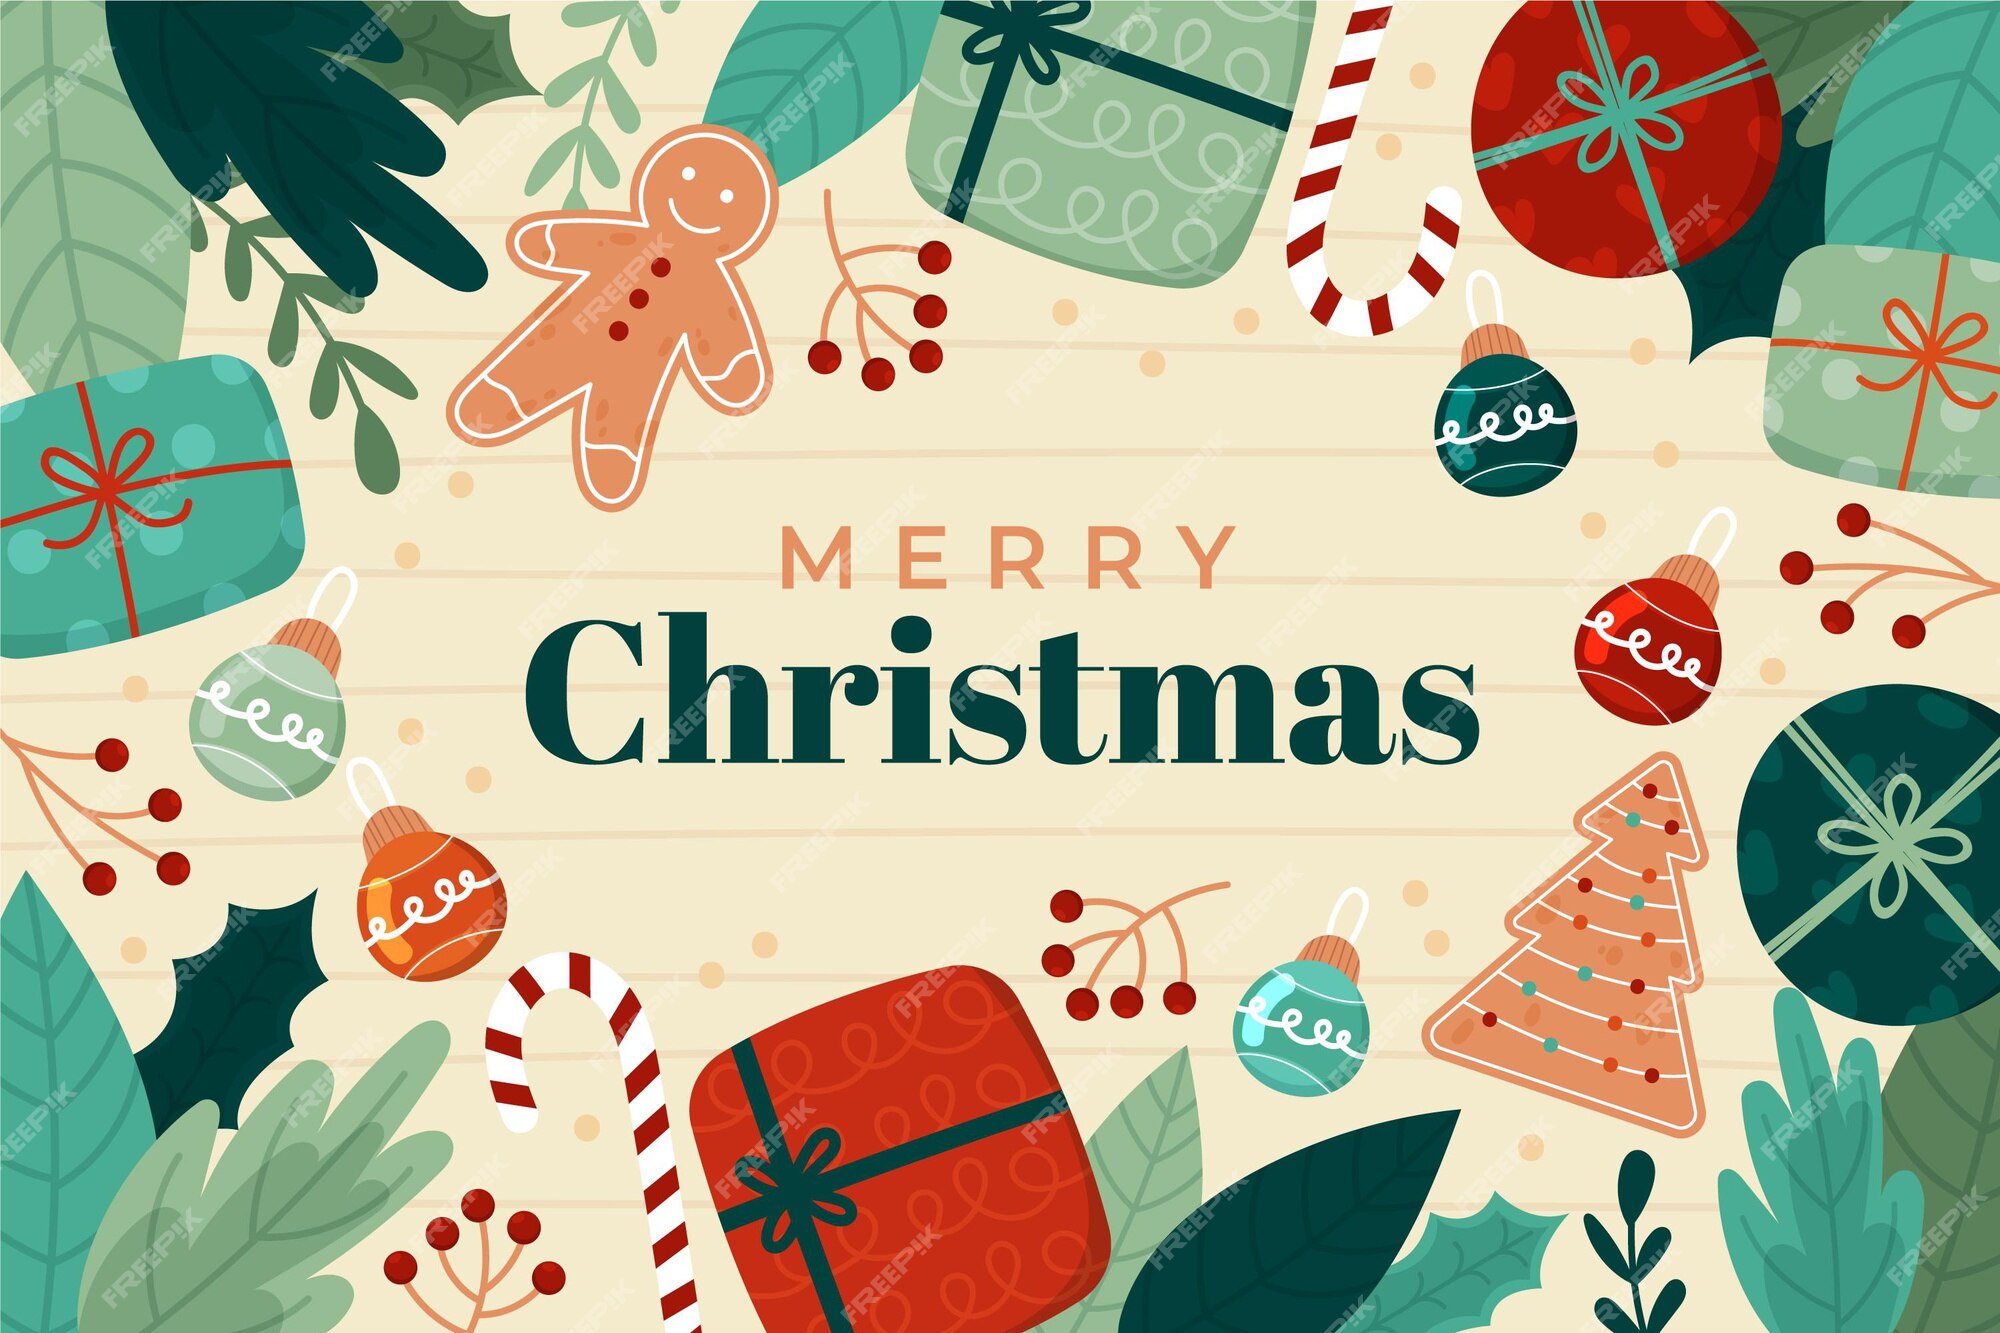 Hãy dành những phút giây thoải mái và tạo nên những hình vẽ Giáng sinh tinh tế theo cách của riêng bạn. Hình nền Giáng sinh vẽ tay chắc chắn sẽ khiến bạn cảm thấy thư giãn và tận hưởng không khí đặc biệt của mùa lễ hội này.